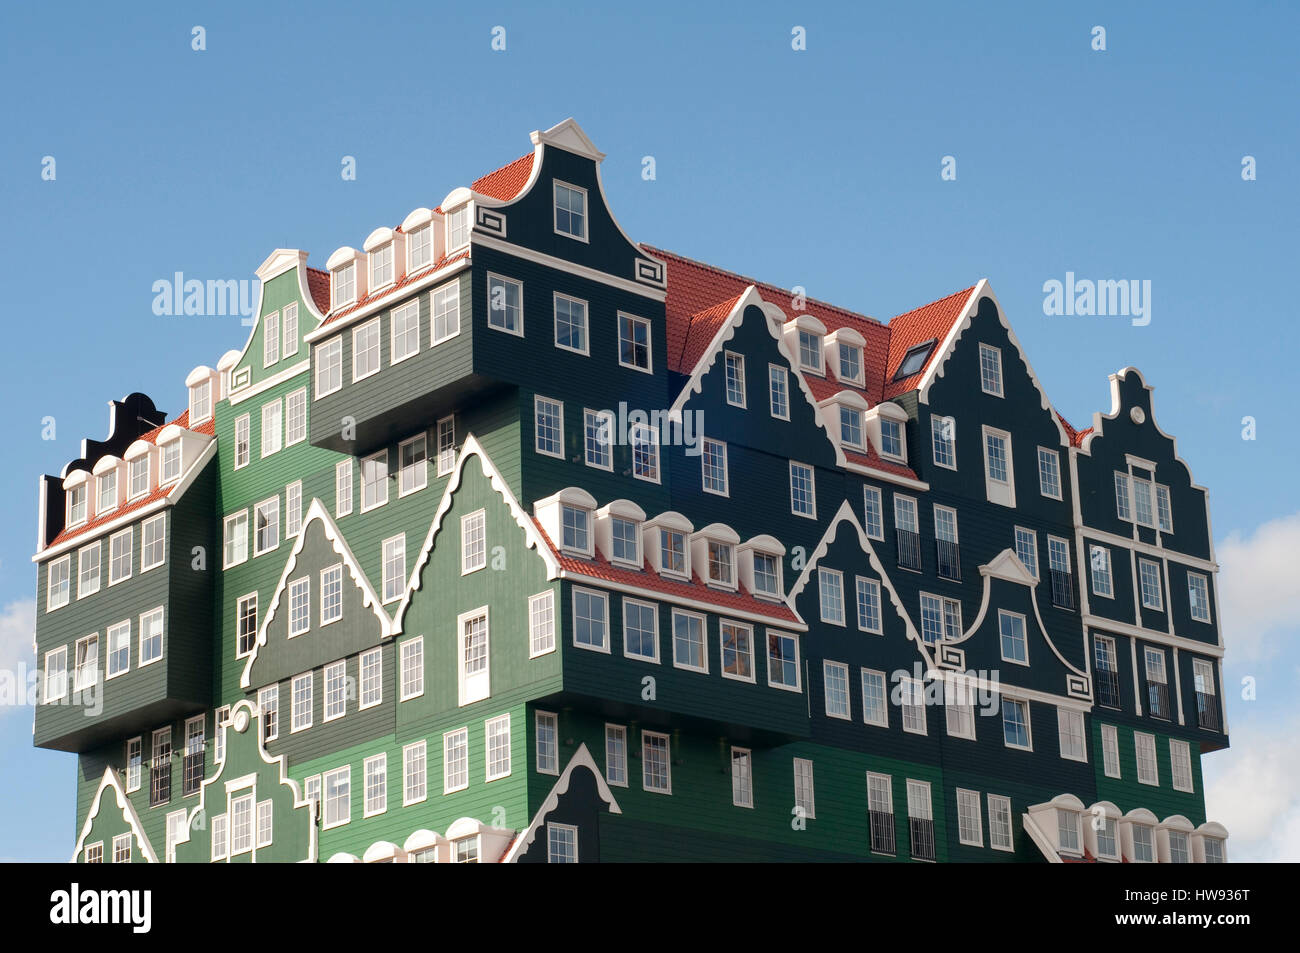 Eine Mischung aus modernen und traditionellen niederländischen Architektur. Die berühmten typischen holländischen Häuser übereinander, ein Gebäude zu bilden. Stockfoto